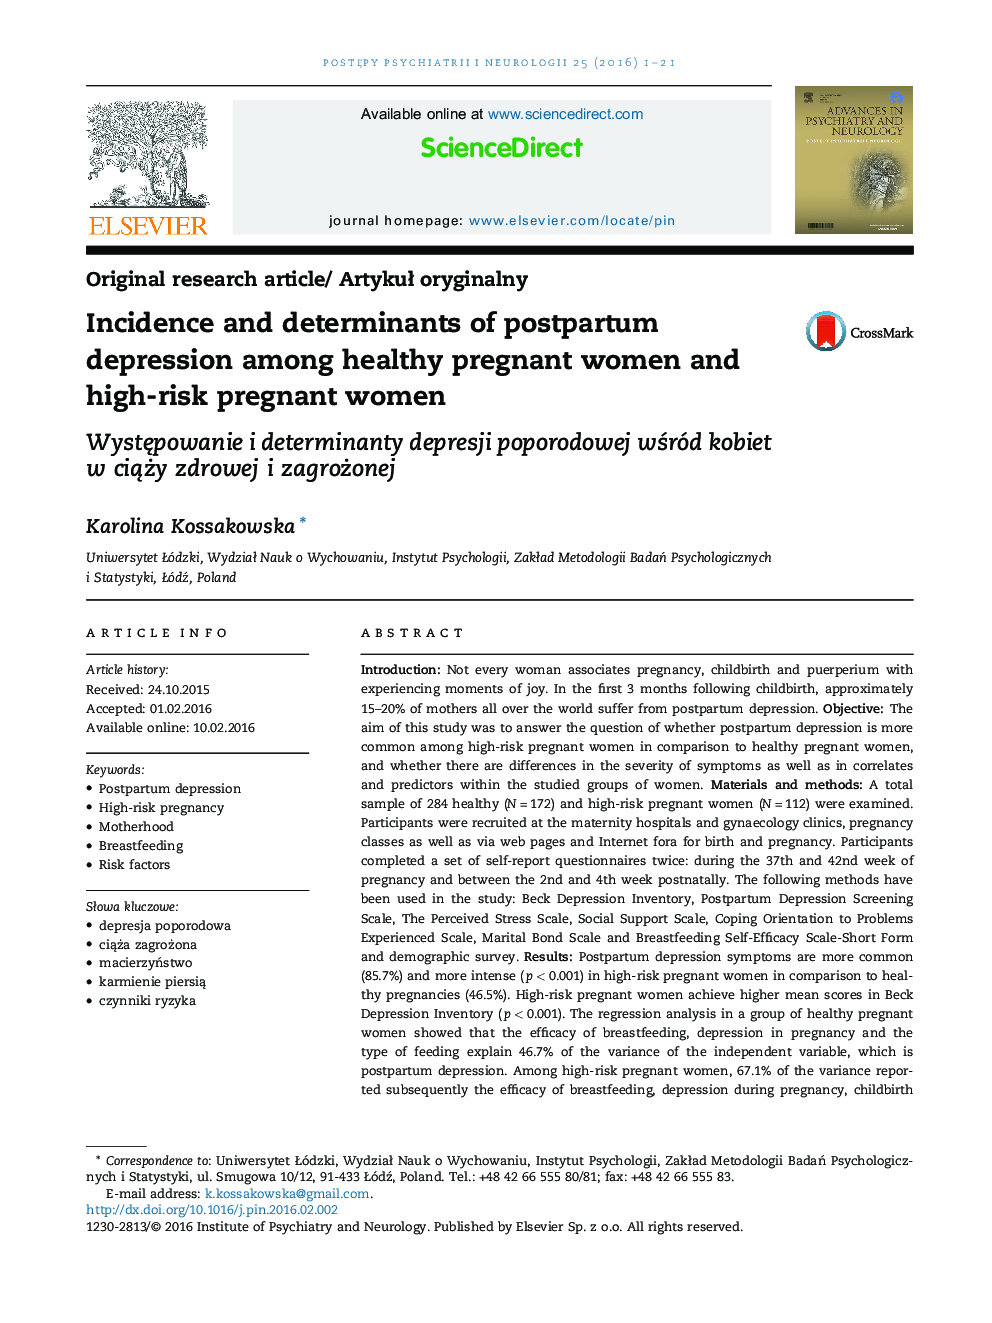 بروز و عوامل افسردگی پس از زایمان در زنان باردار سالم و زنان باردار در معرض خطر